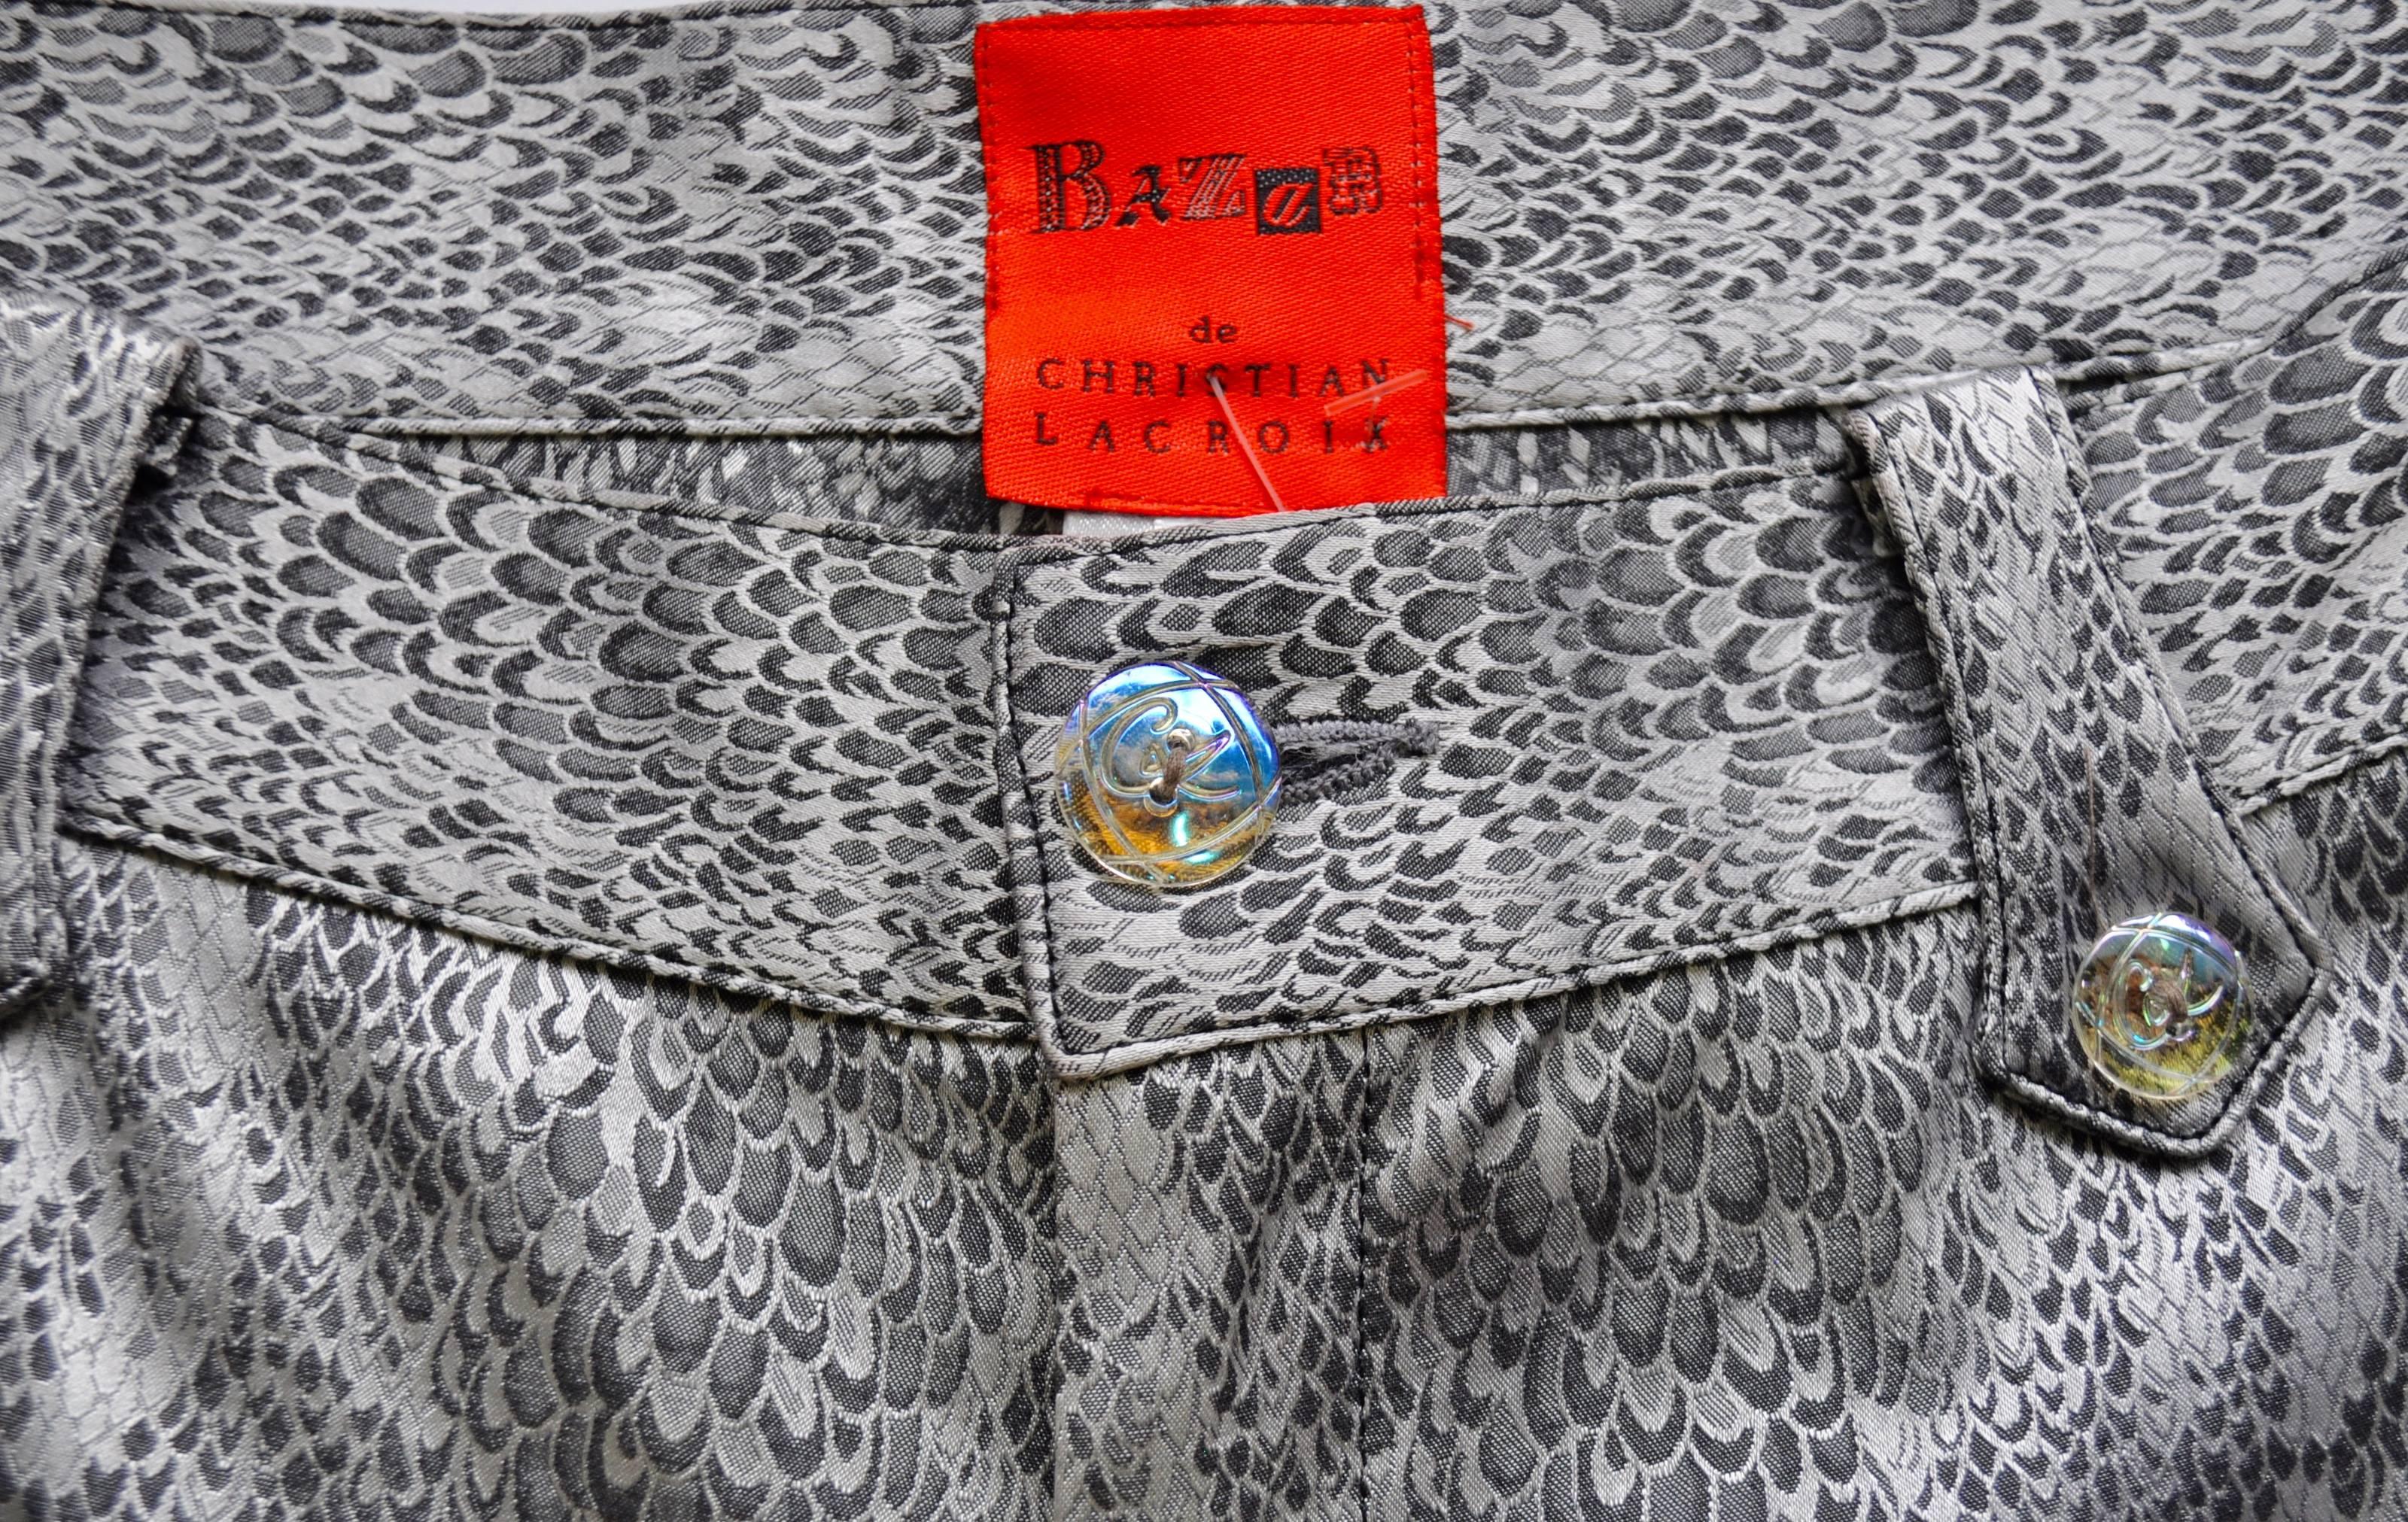 Sensational Bazar de Christian Lacroix Strapless Bustier Snake Print Pantsuit For Sale 4